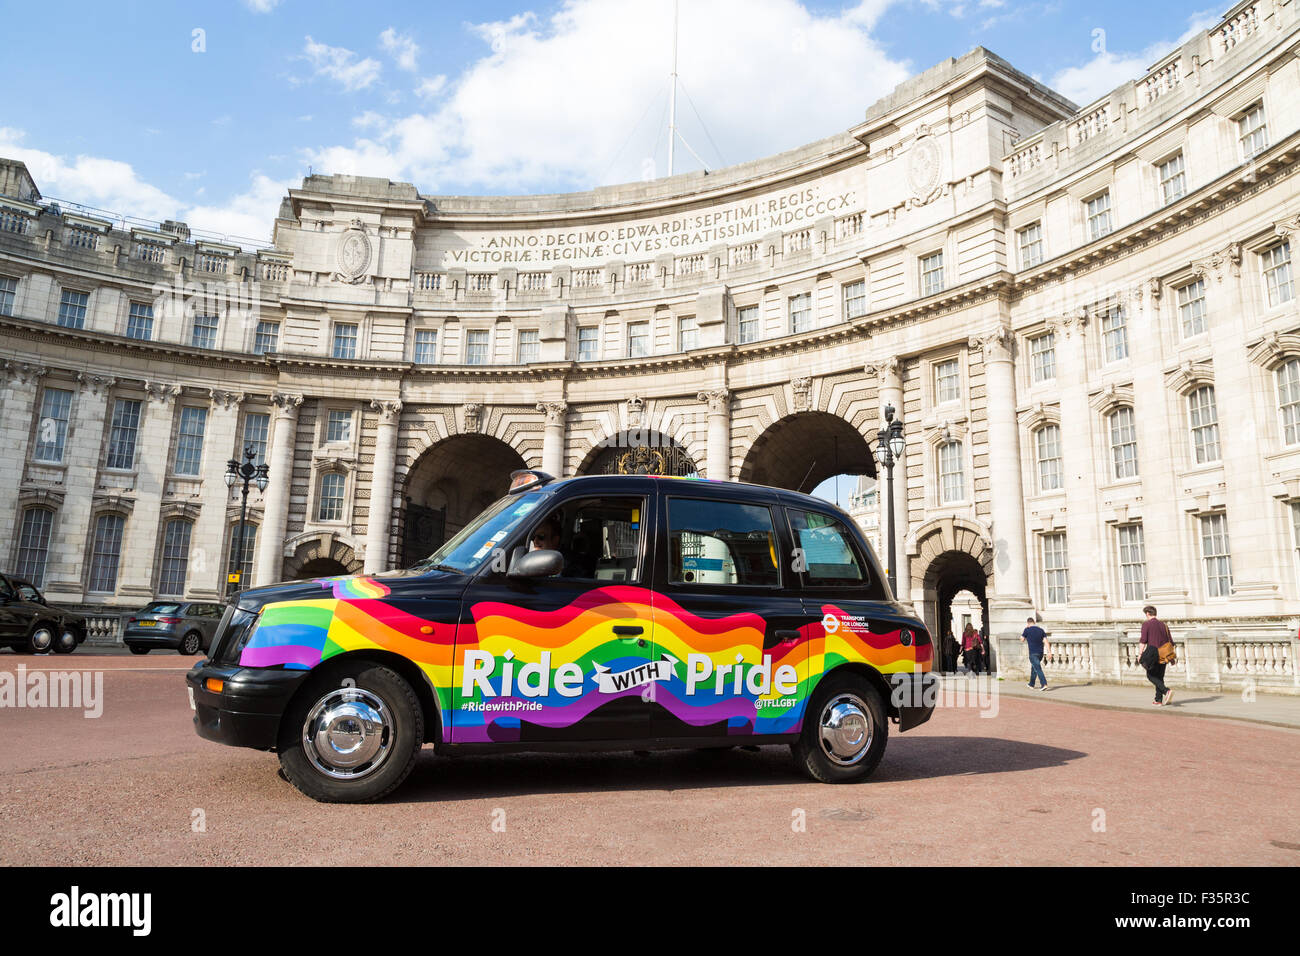 Un taxi negro de Londres, decorado con el paseo con orgullo la envoltura. Foto de stock